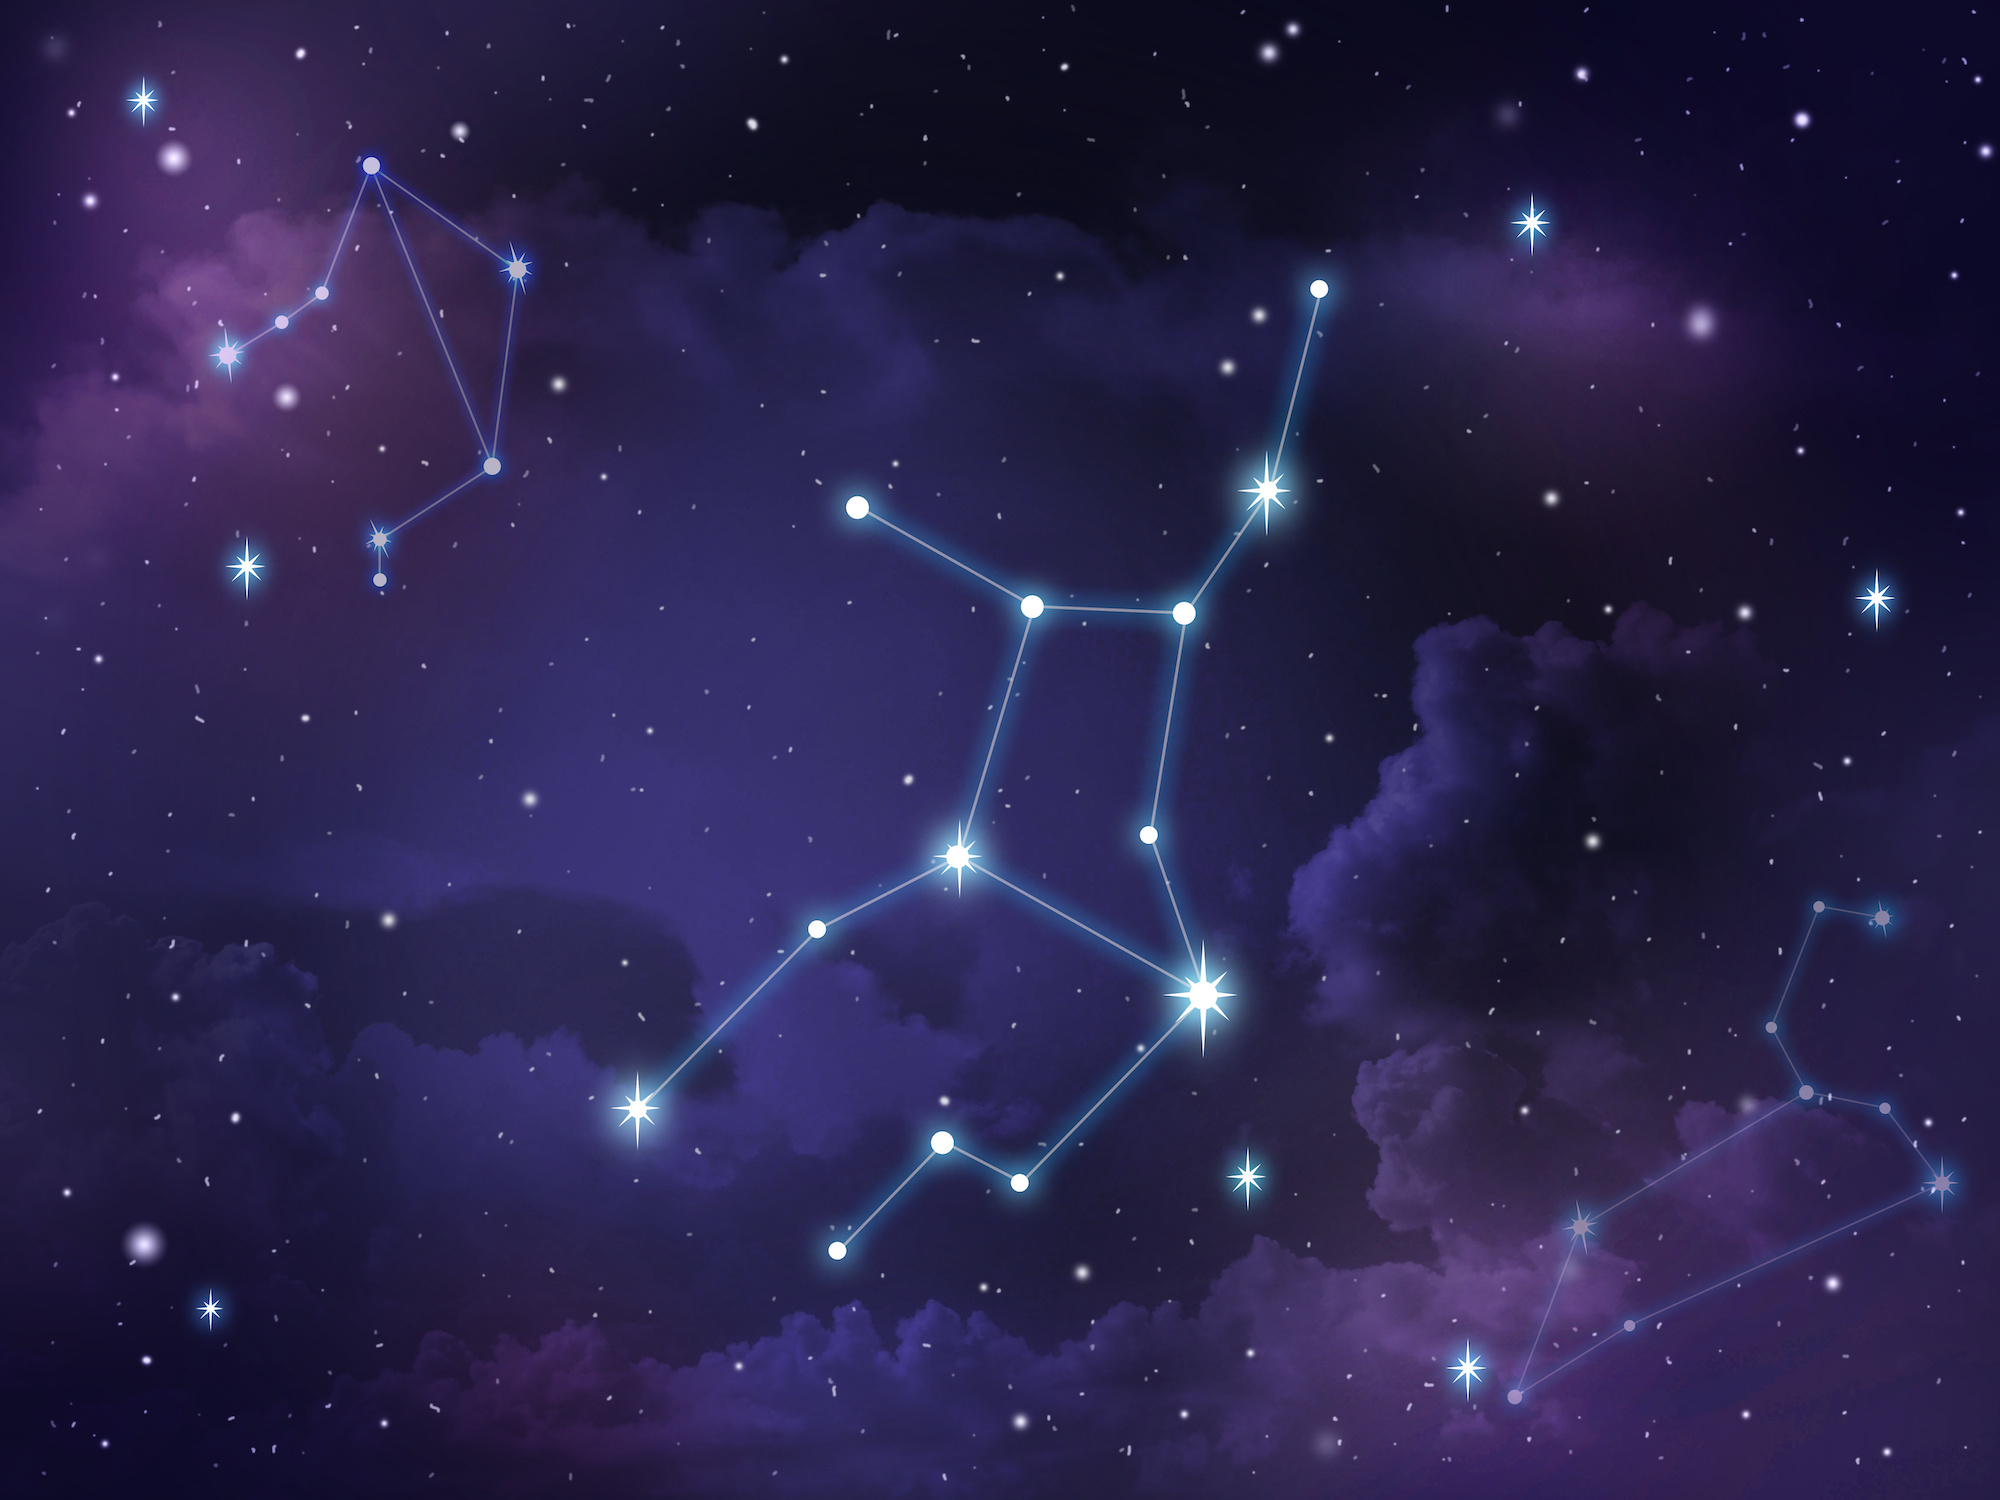 Apprenez à reconnaître les constellations grâce à notre quiz. © baitoey, Adobe Stock